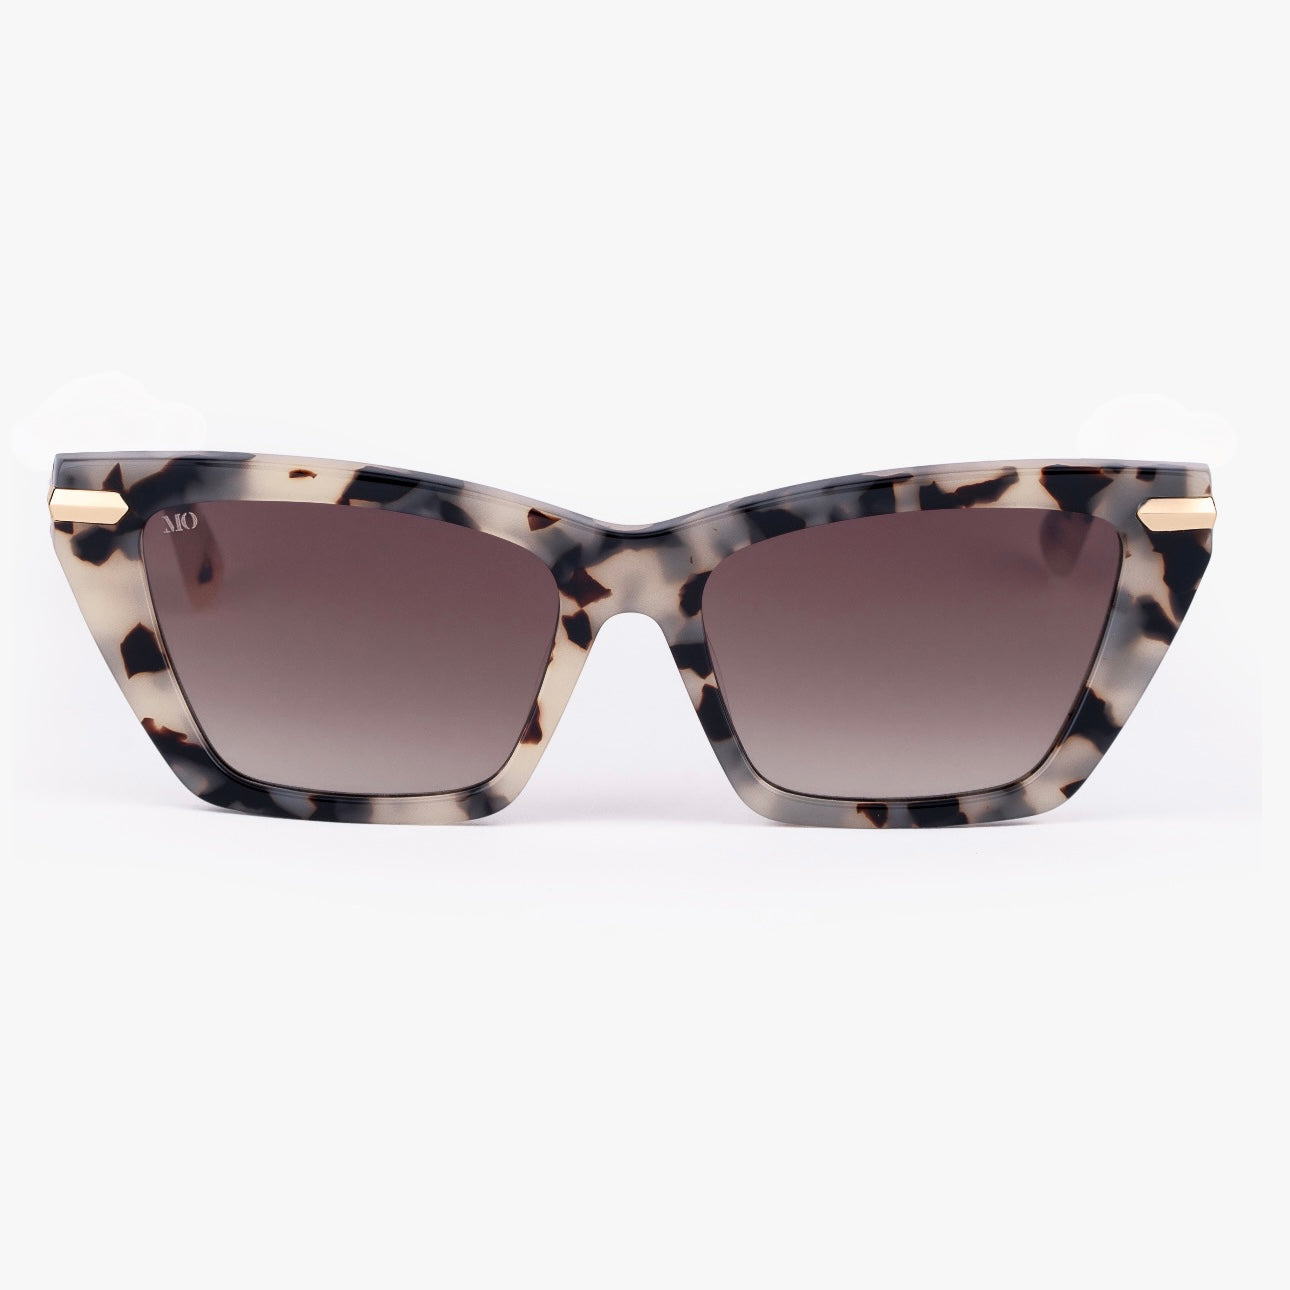 Elle Sunglasses Cream Tortoise Cat Eye Frame